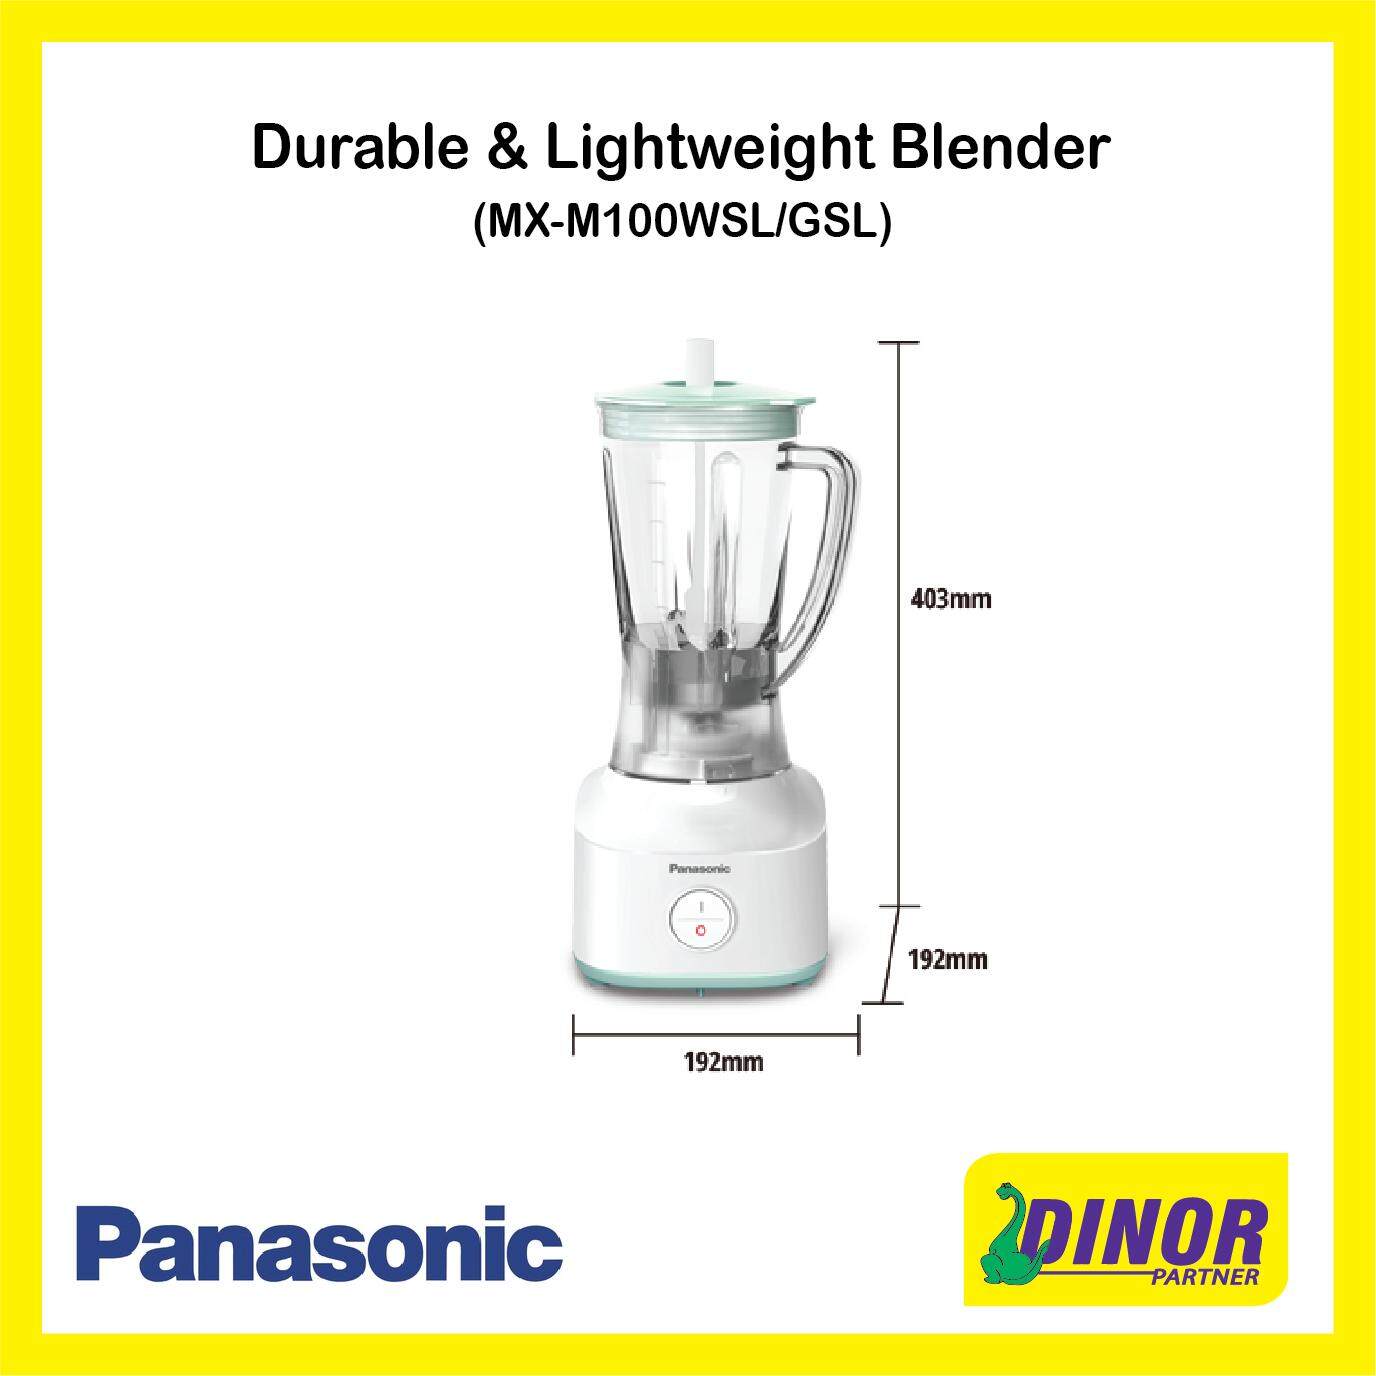 Panasonic Durable & Lightweight Blender MX-M100WSL/GSL